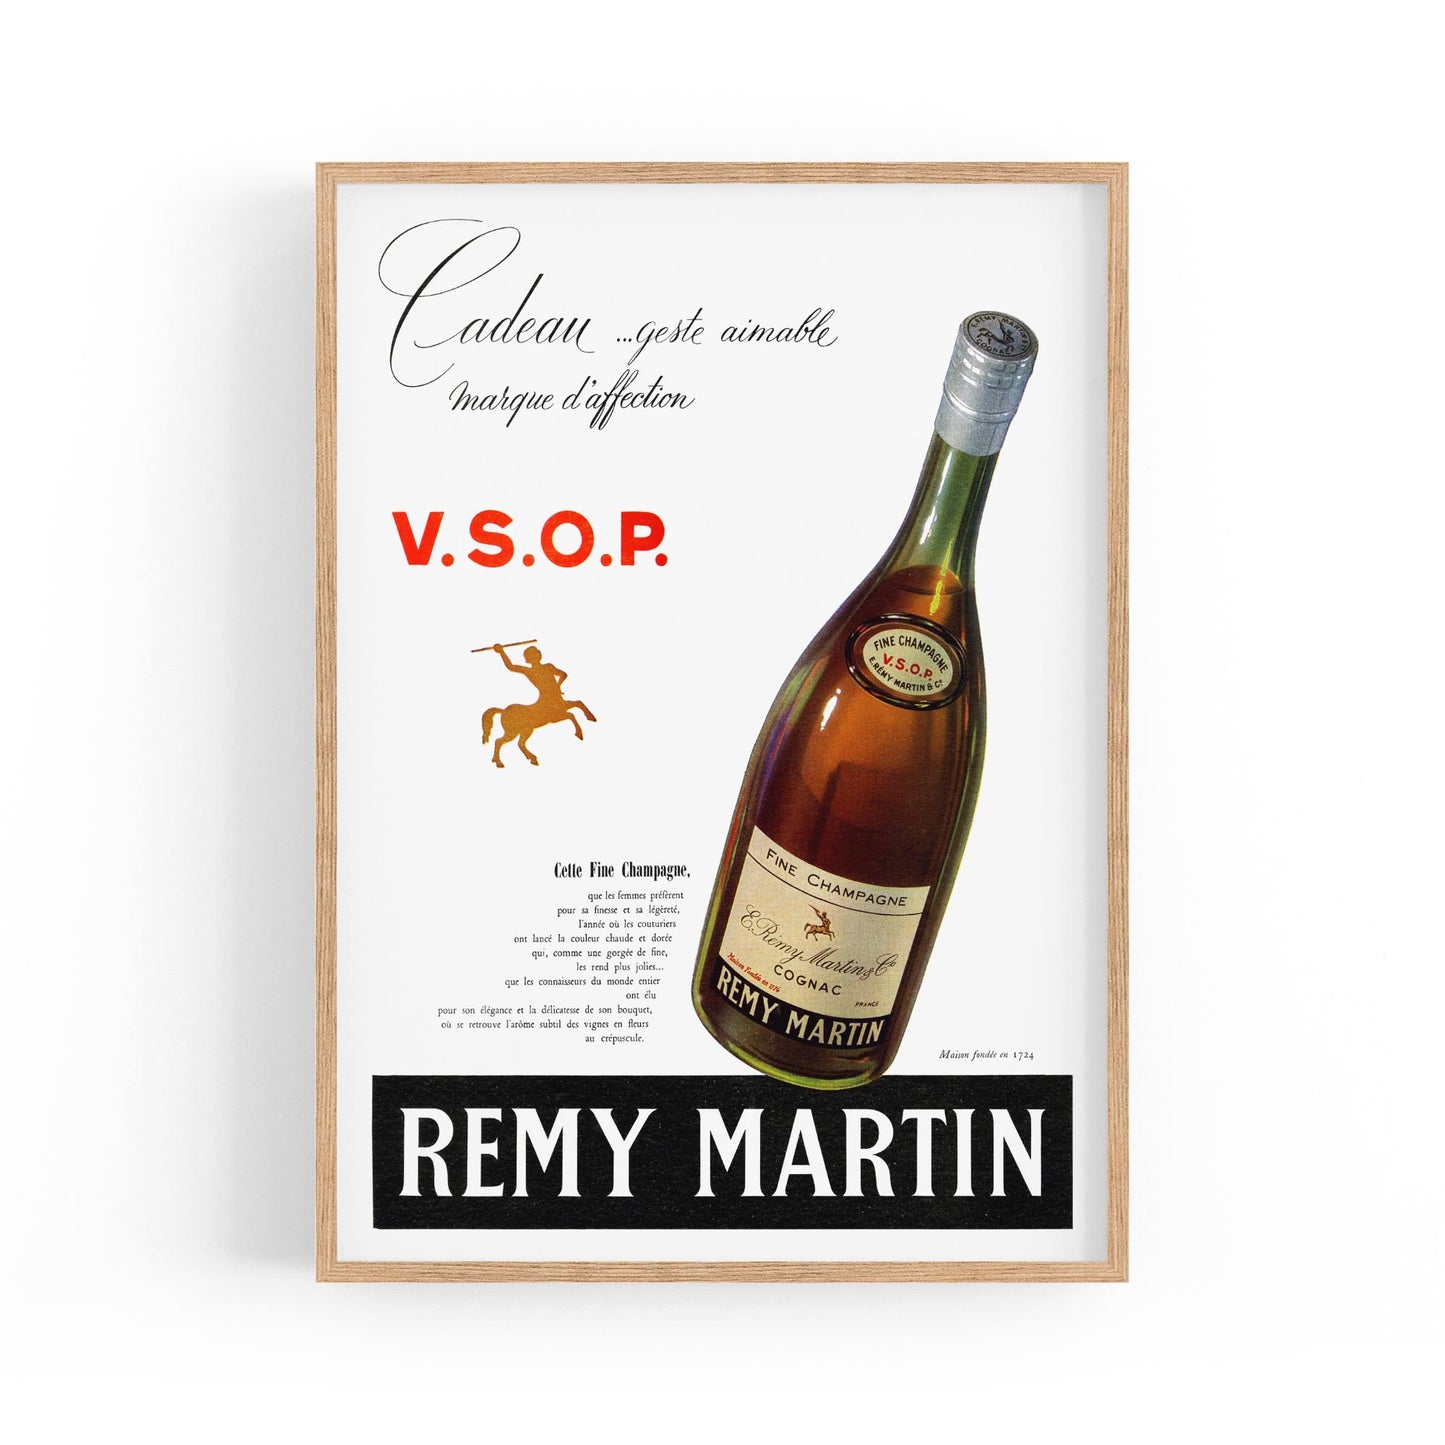 Remy Martin Cognac Champagne Wine | Framed Vintage Poster